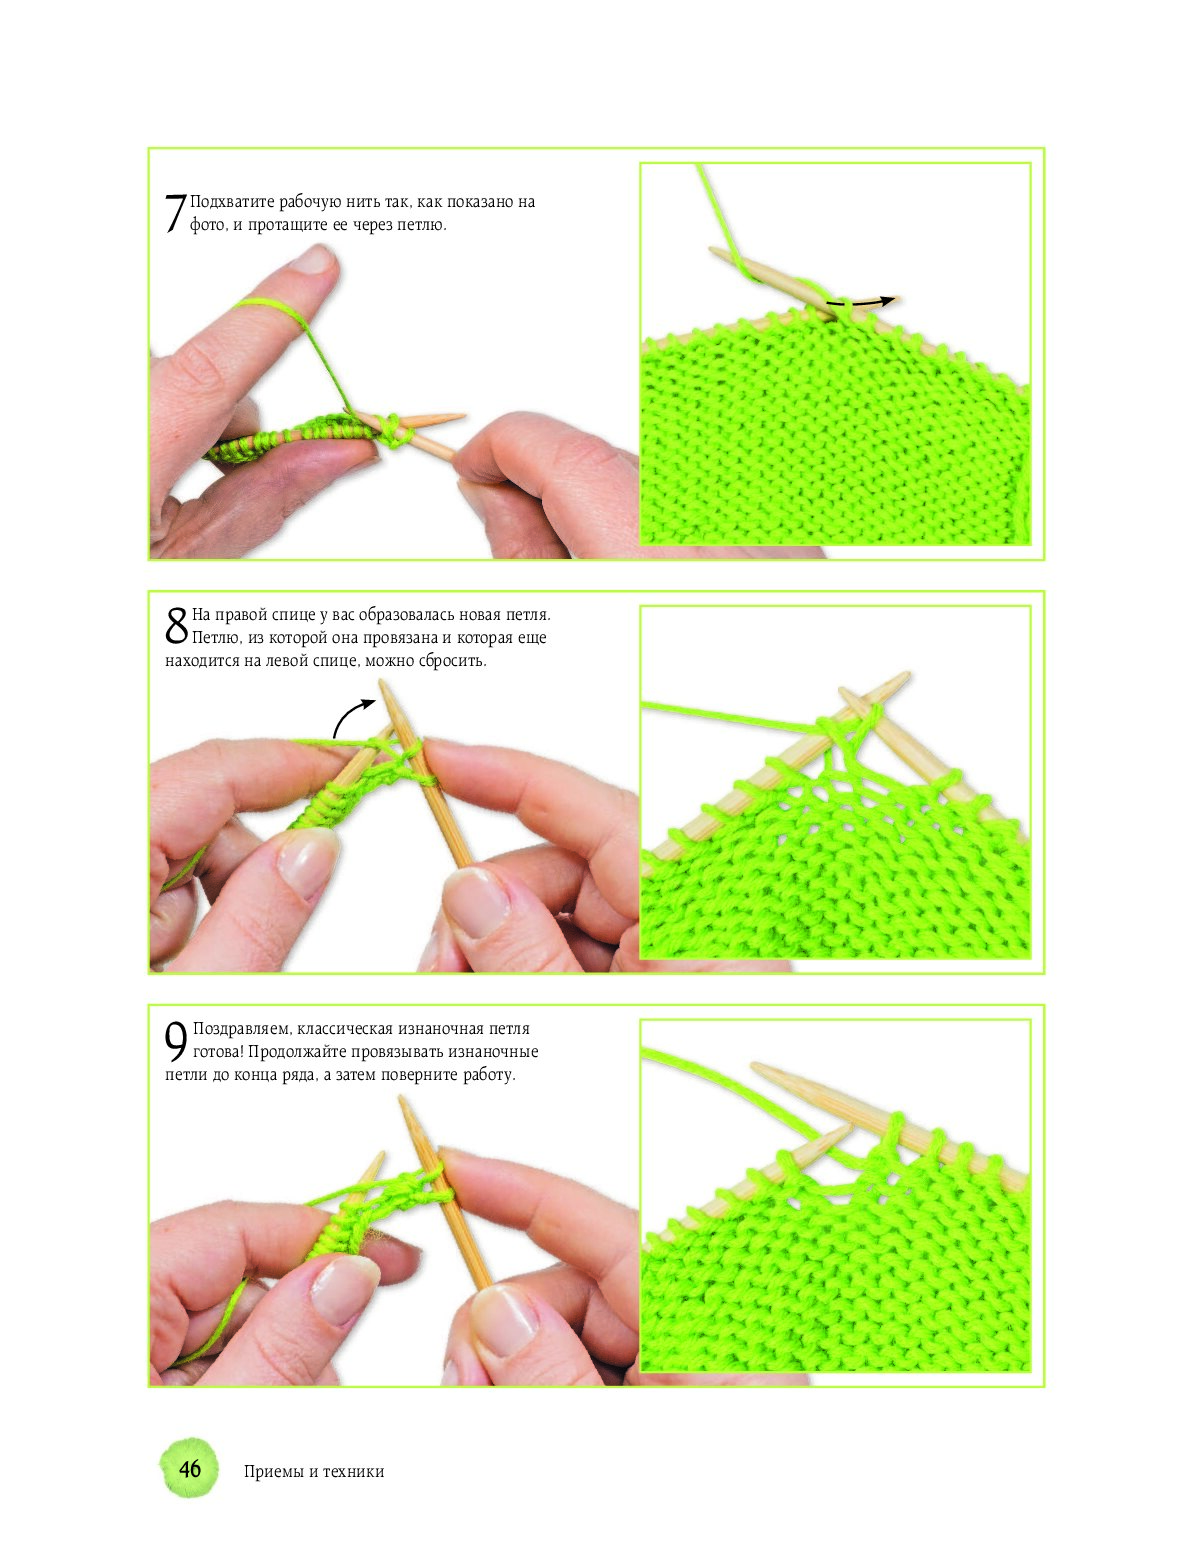 Самая простая вязка. Вязка спицами для начинающих. Научиться вязать спицами с нуля по схеме. Вязание спицами для начинающих пошагово. Пошаговое вязание спицами для начинающих.